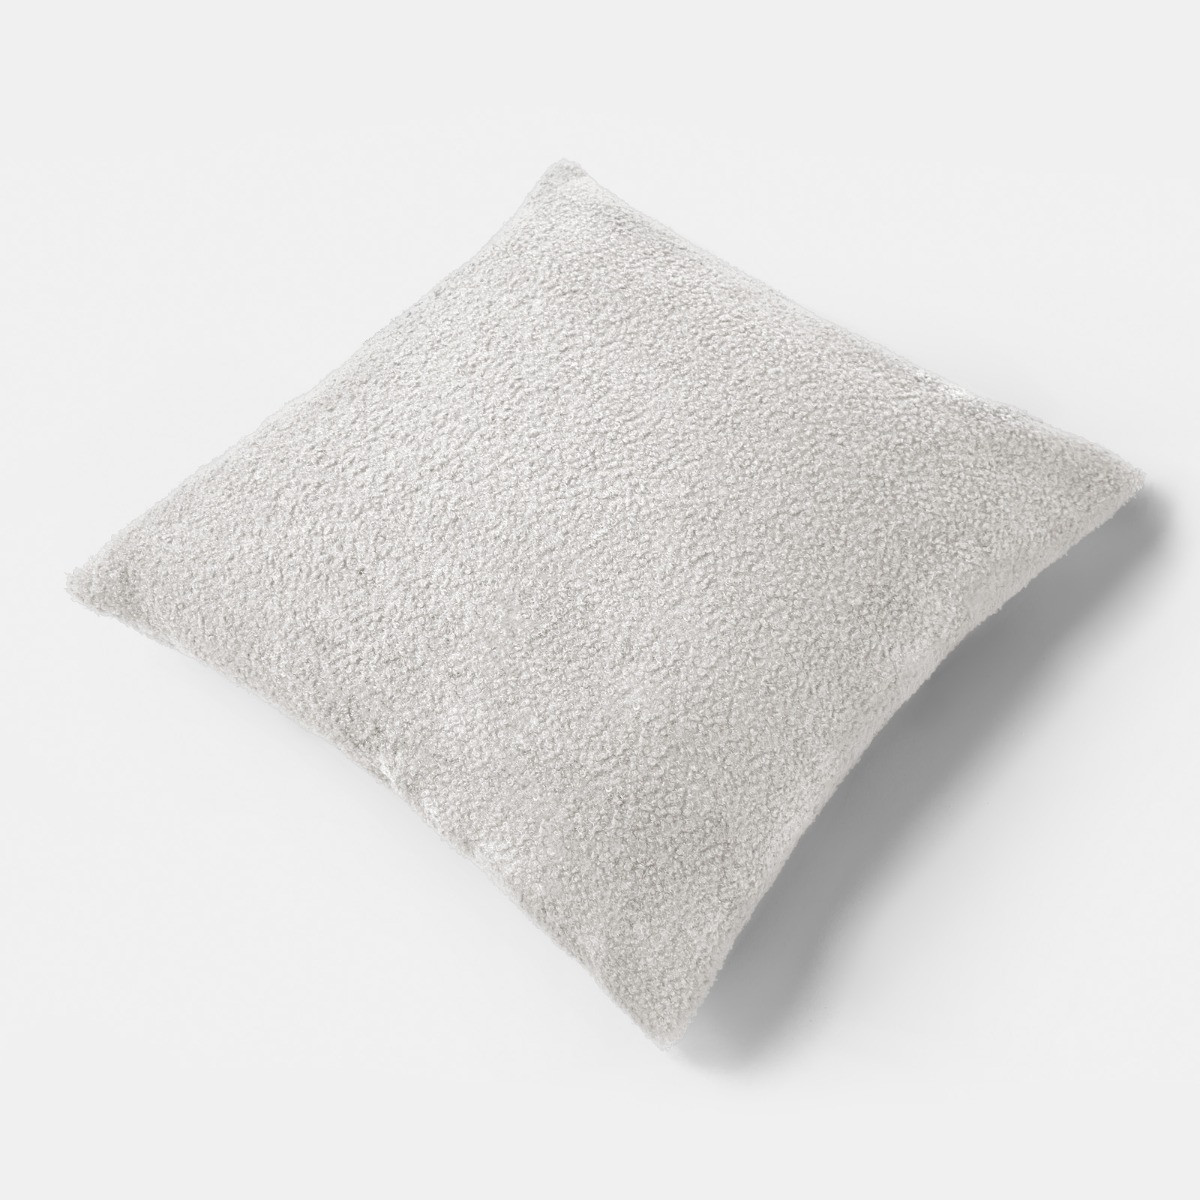 Highams Teddy Bouclé Cushion Covers - Grey